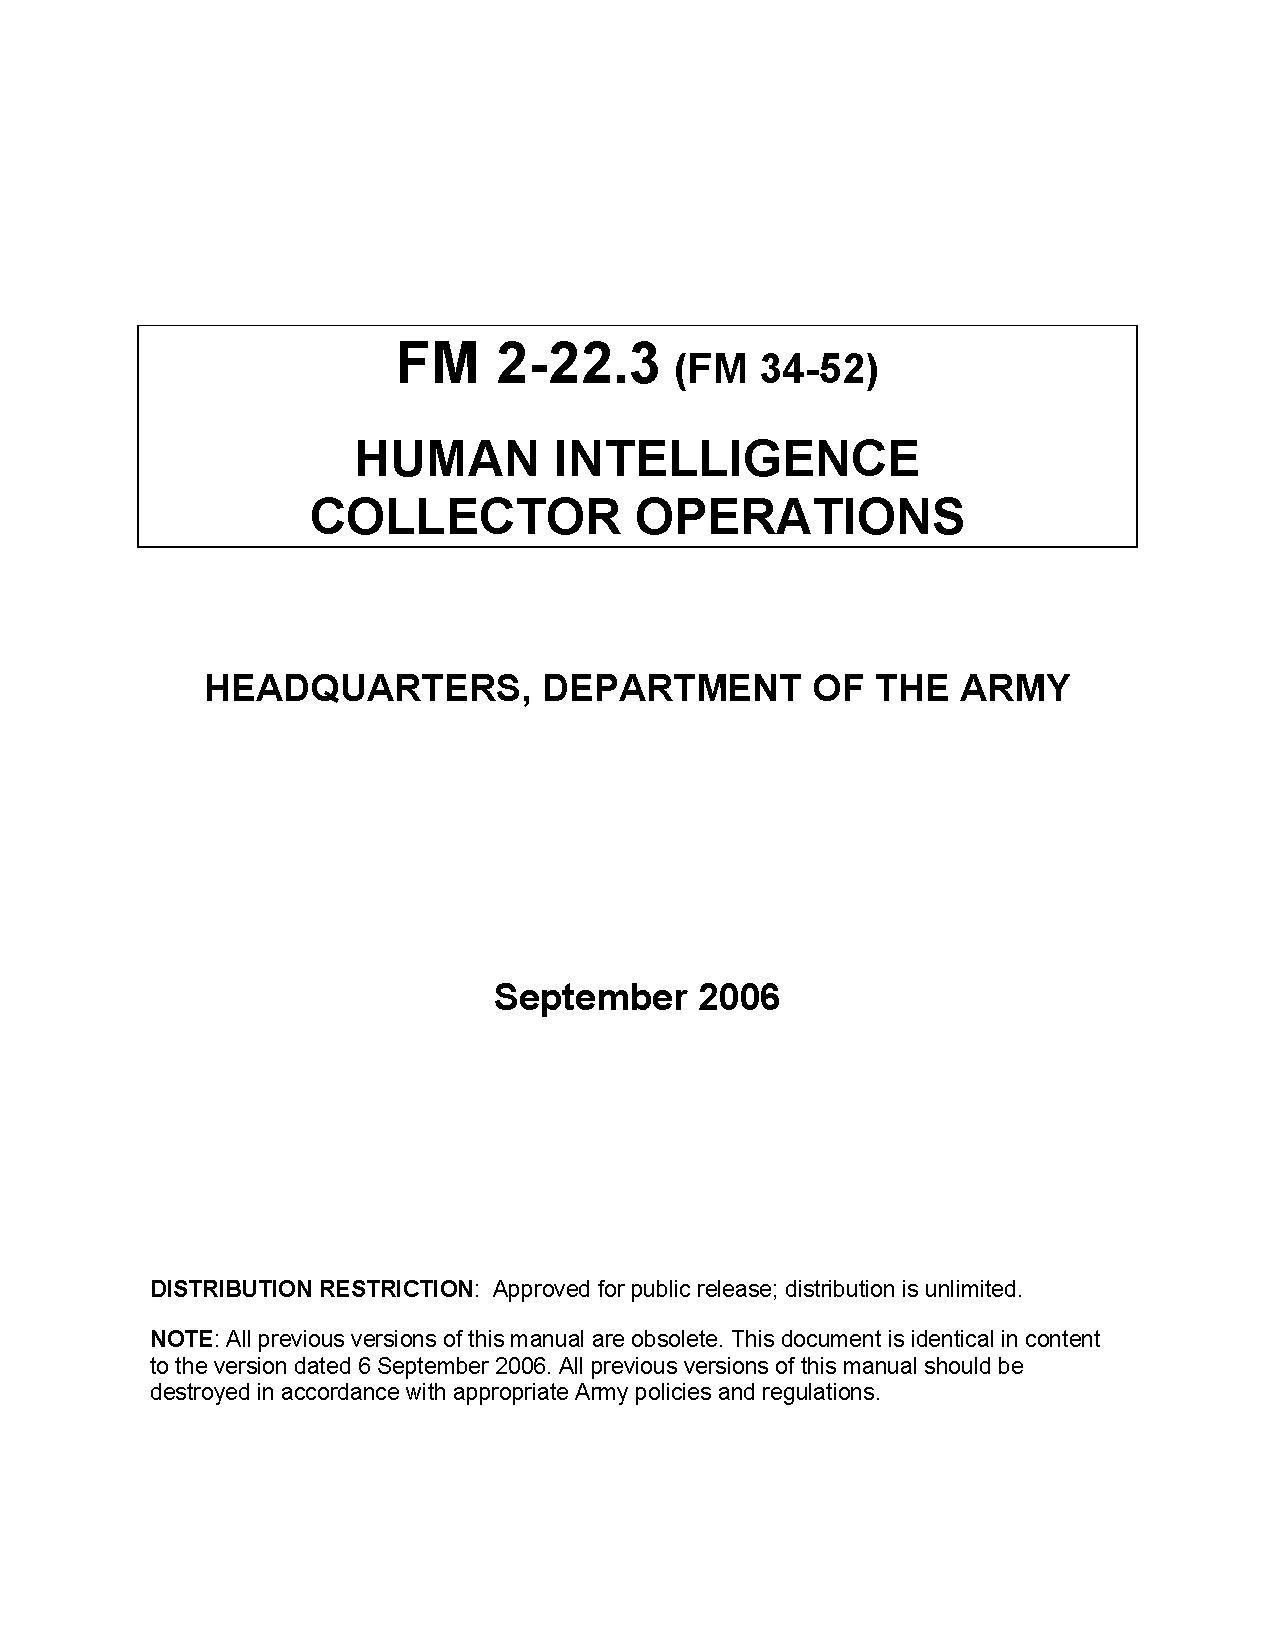 Army Field Manuals Pdf